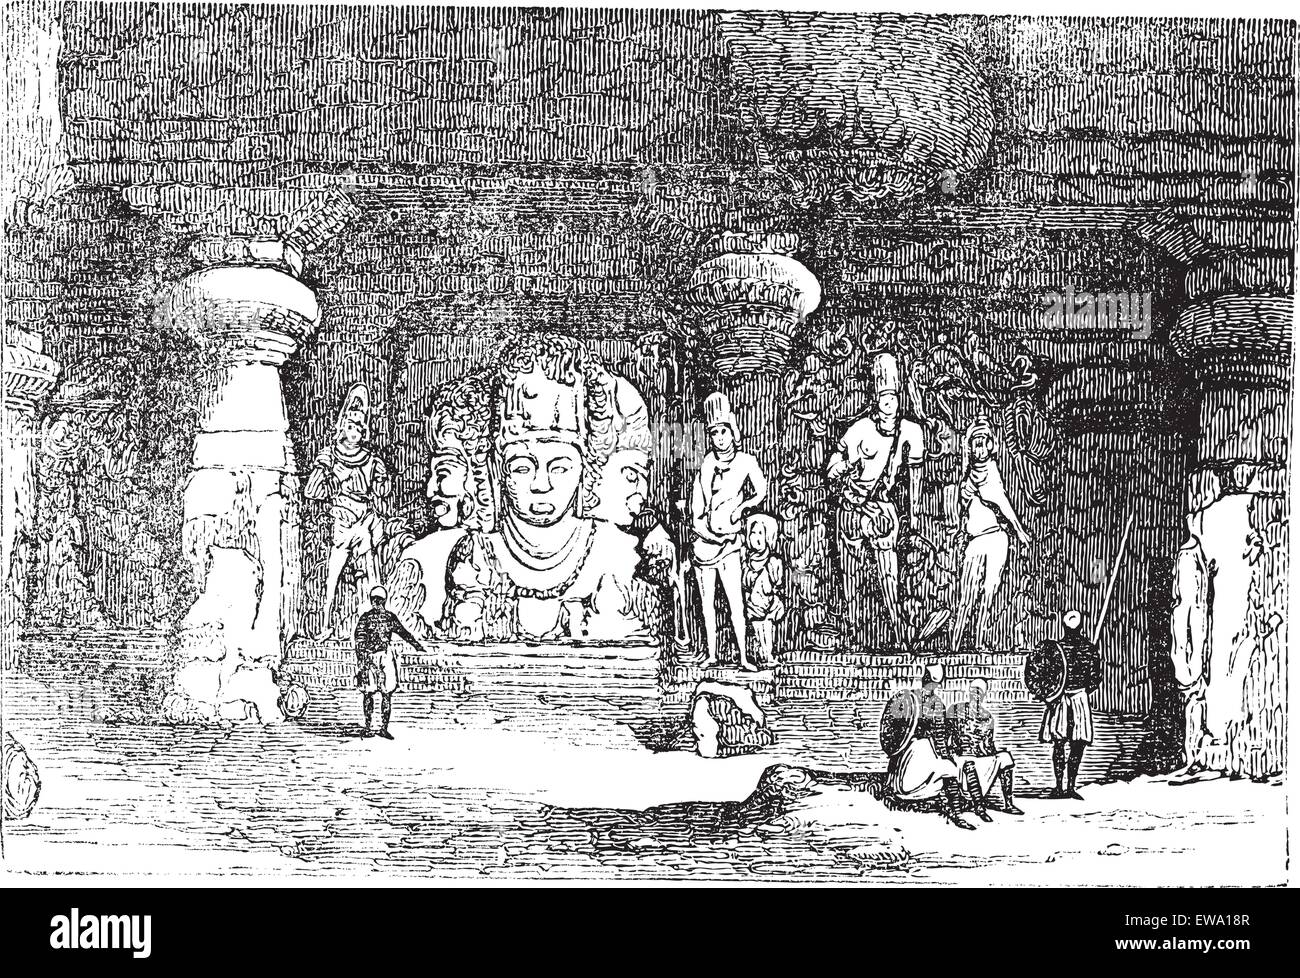 Grotte d'Elephanta, dans le Maharashtra, en Inde, au cours des années 1890, vintage la gravure. Vieille illustration gravée d'une grotte d'Elephanta showin Illustration de Vecteur